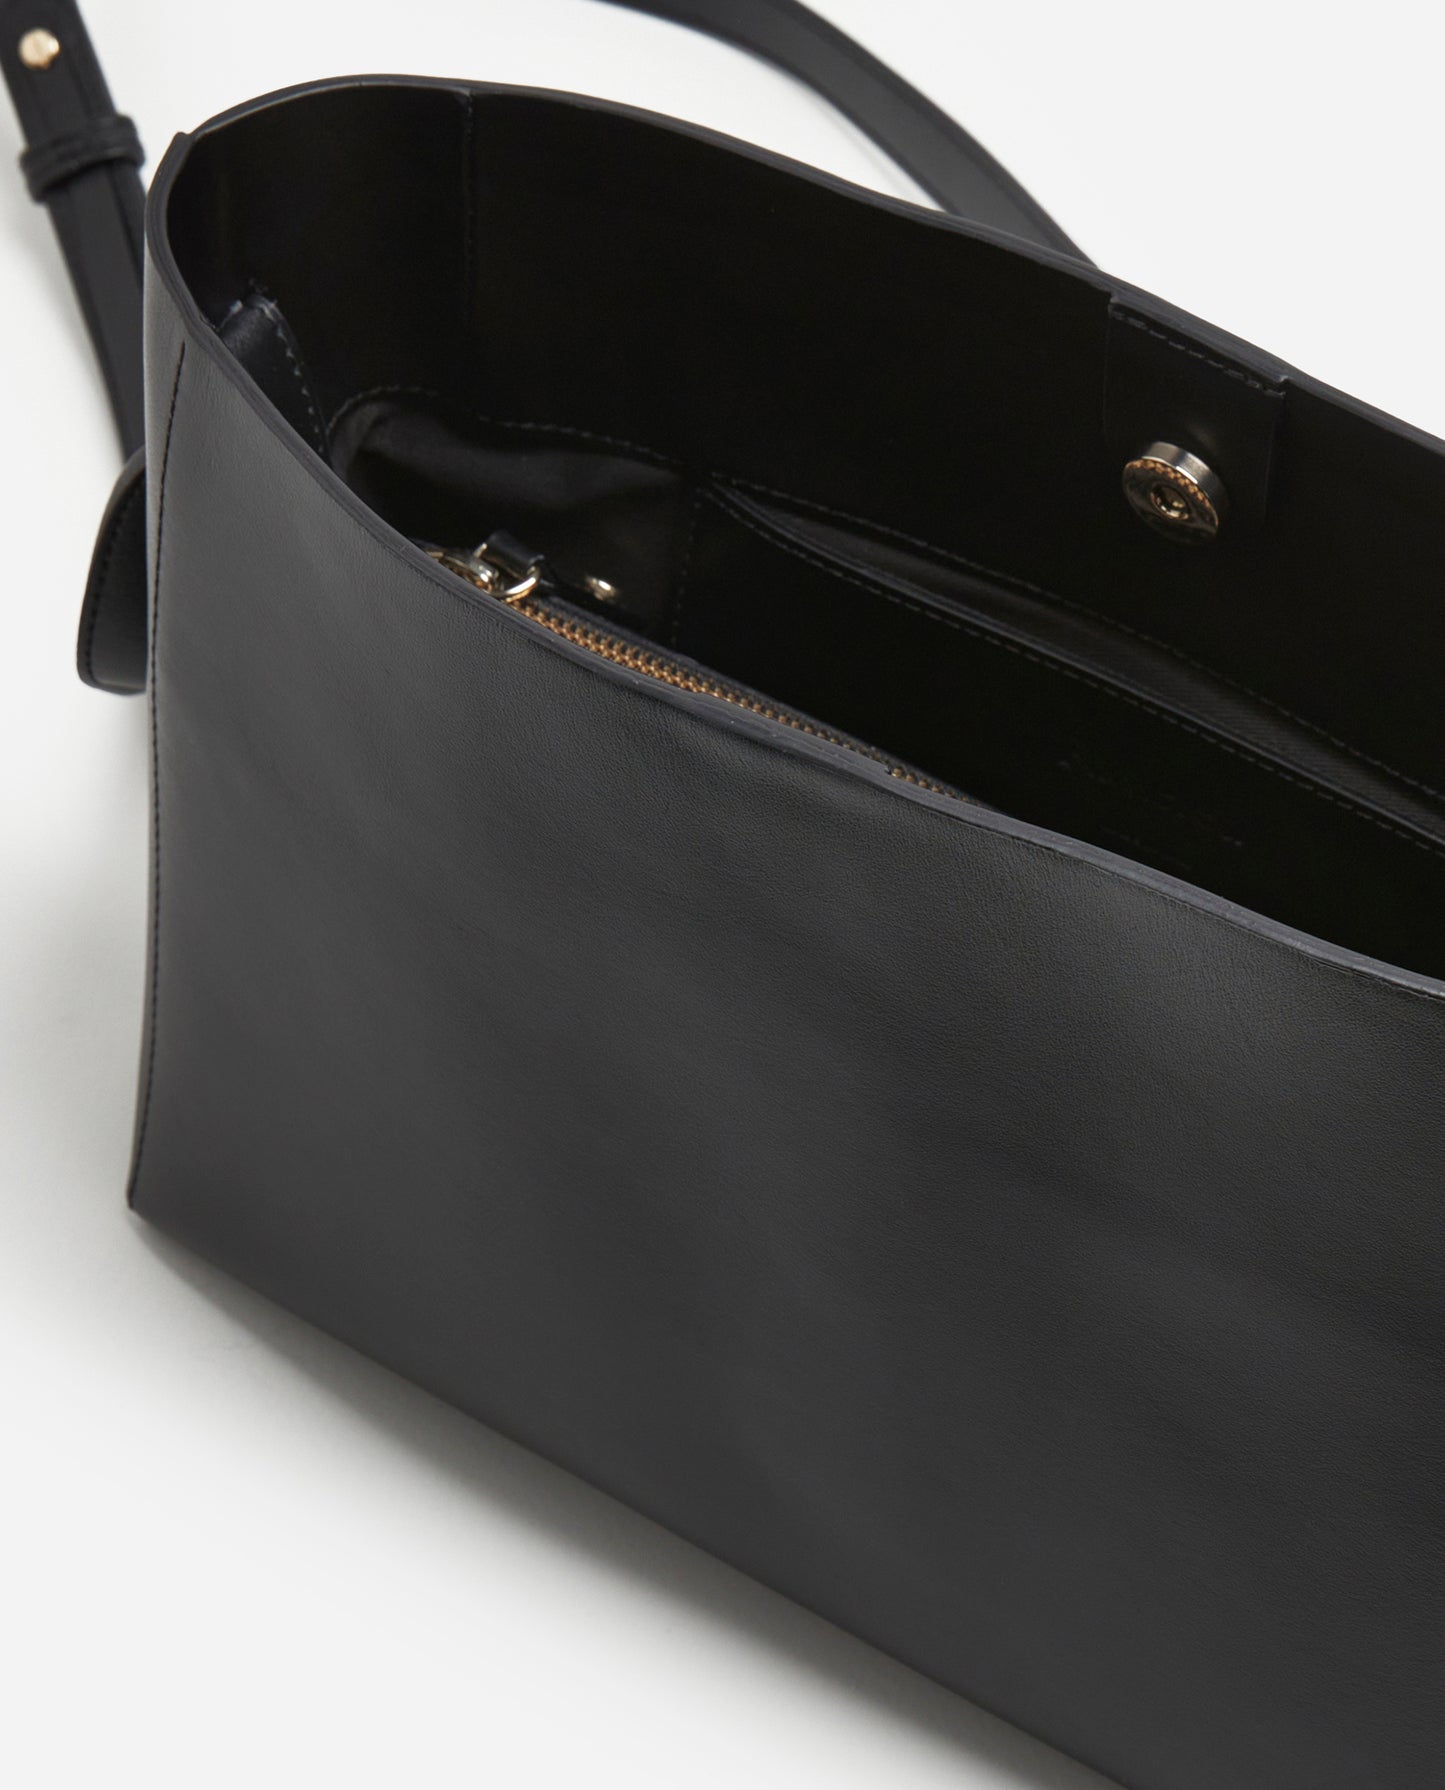 Hedda Grande Handbag Black Leather